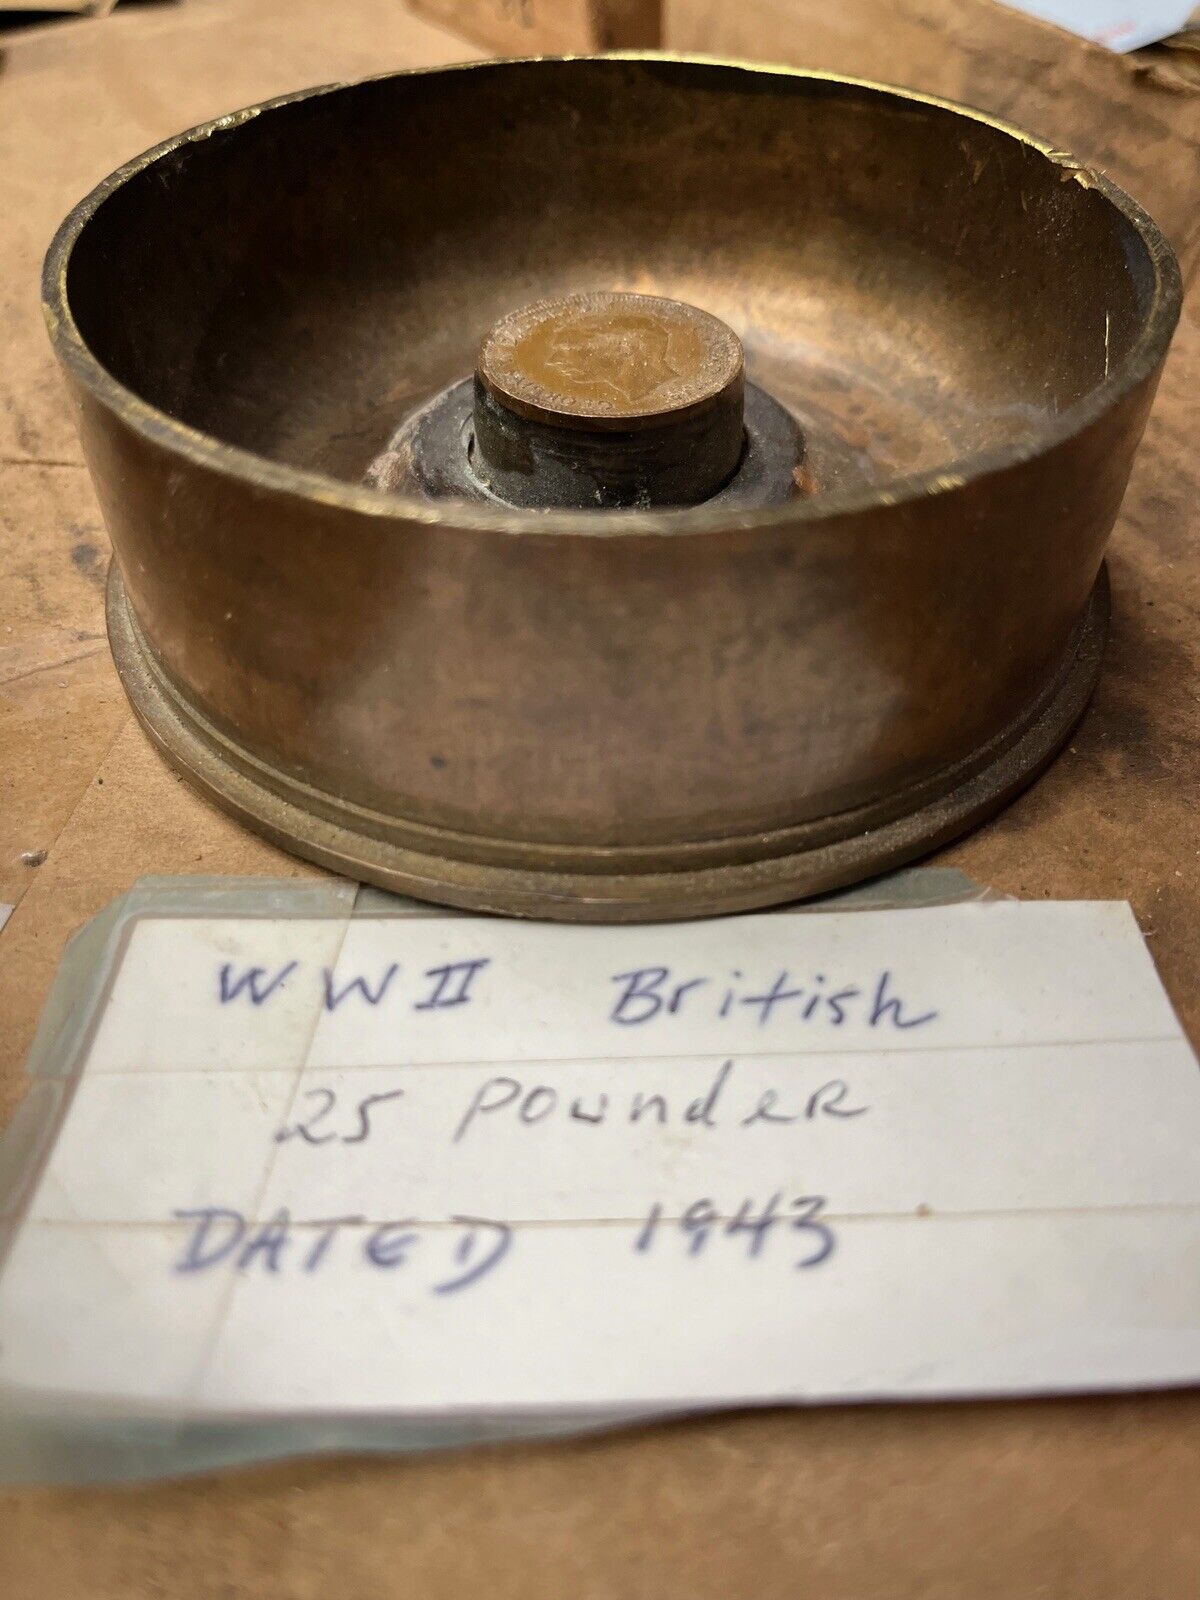 WWII  British 25 Pounder Shell 1943  Ashtray Or Trinket Dish